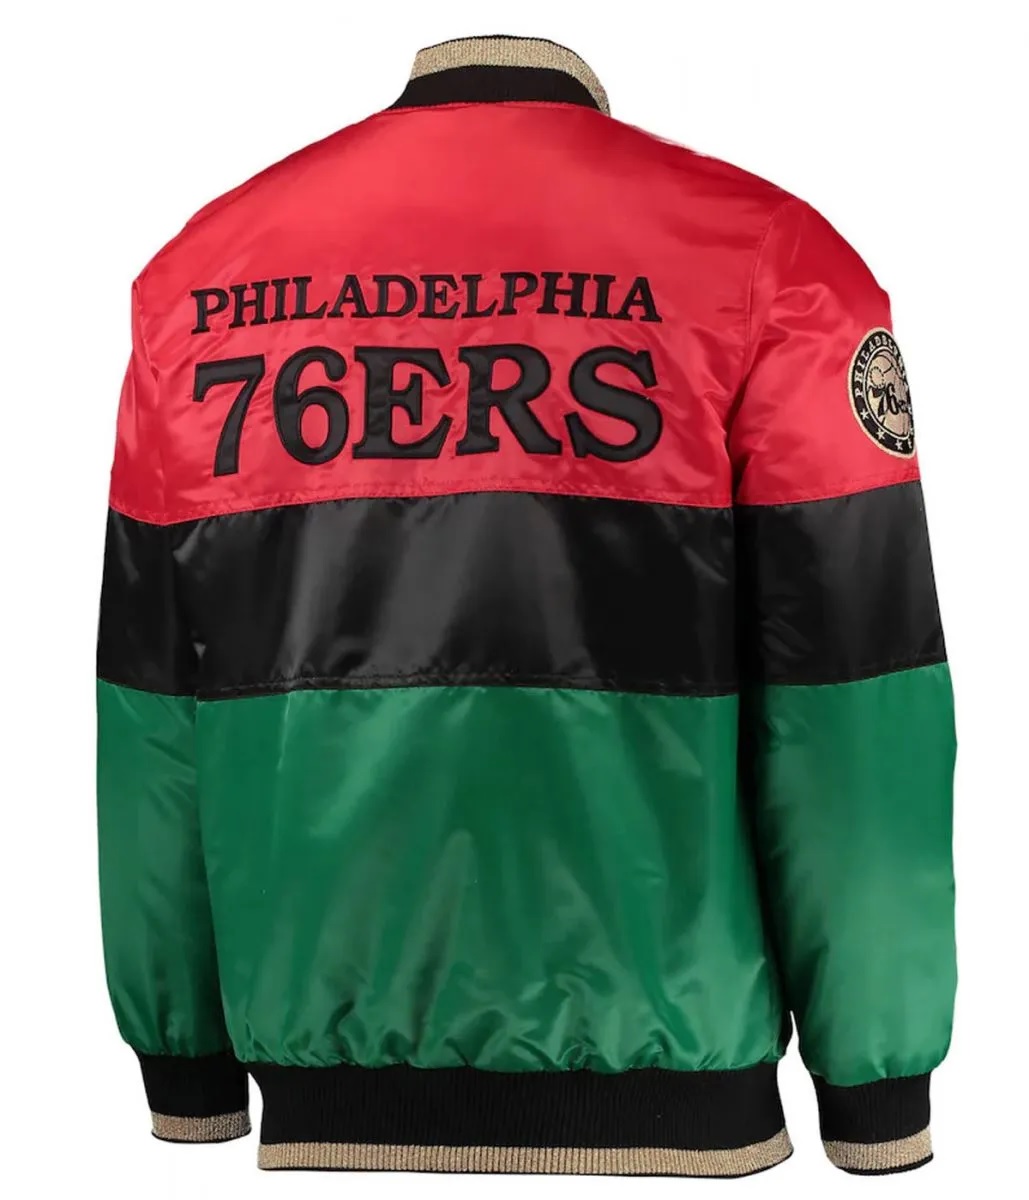 Philadelphia 76ers Red/Black/Green Satin Full-Zip Jacket